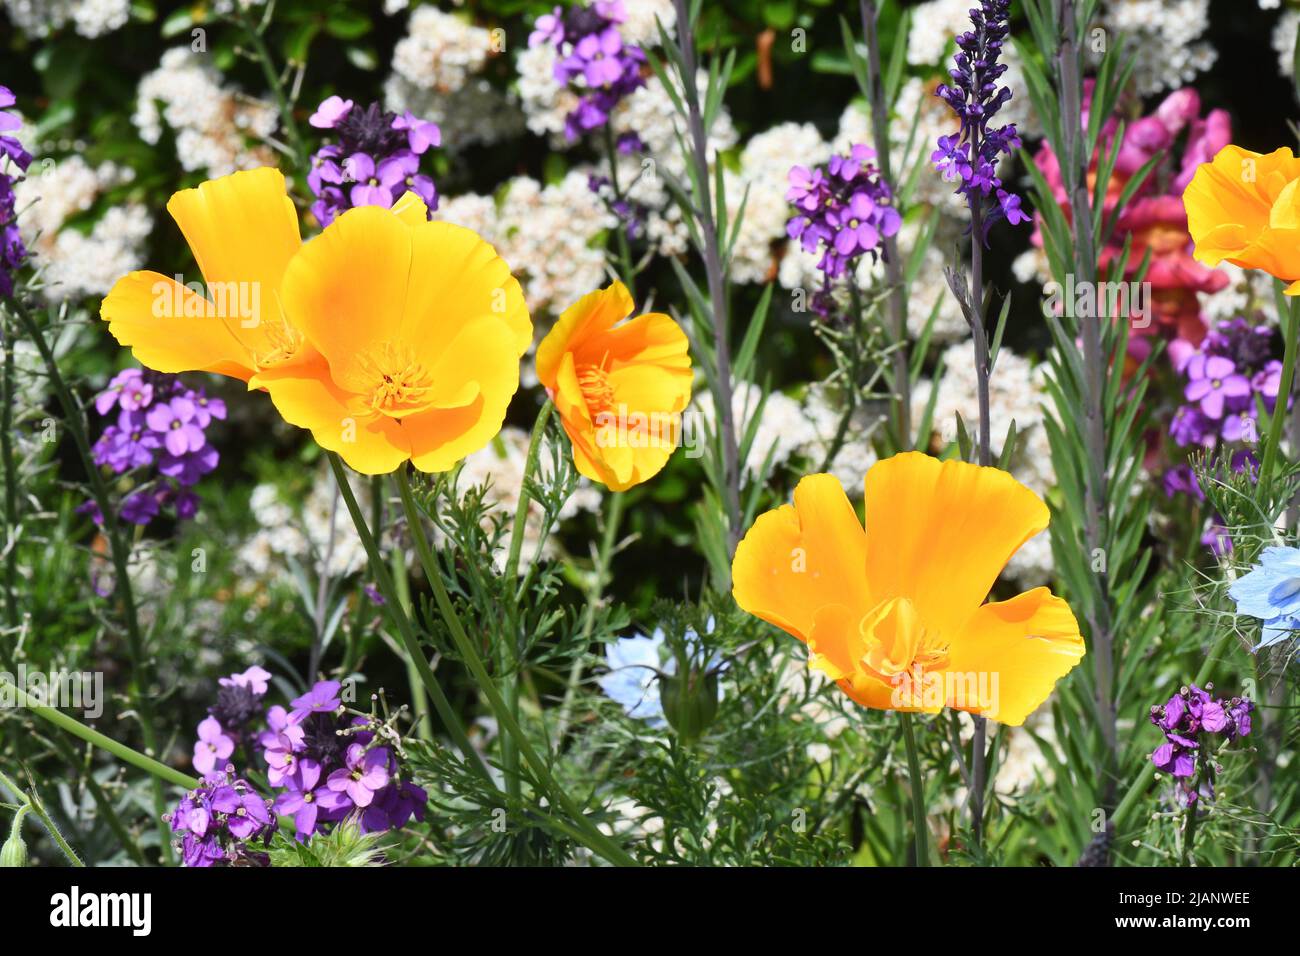 Poppies californiennes dorées et brillantes, Eschscholzia californica, dans une frontière mixte au début de l'été, dans un jardin du Somerset. Banque D'Images